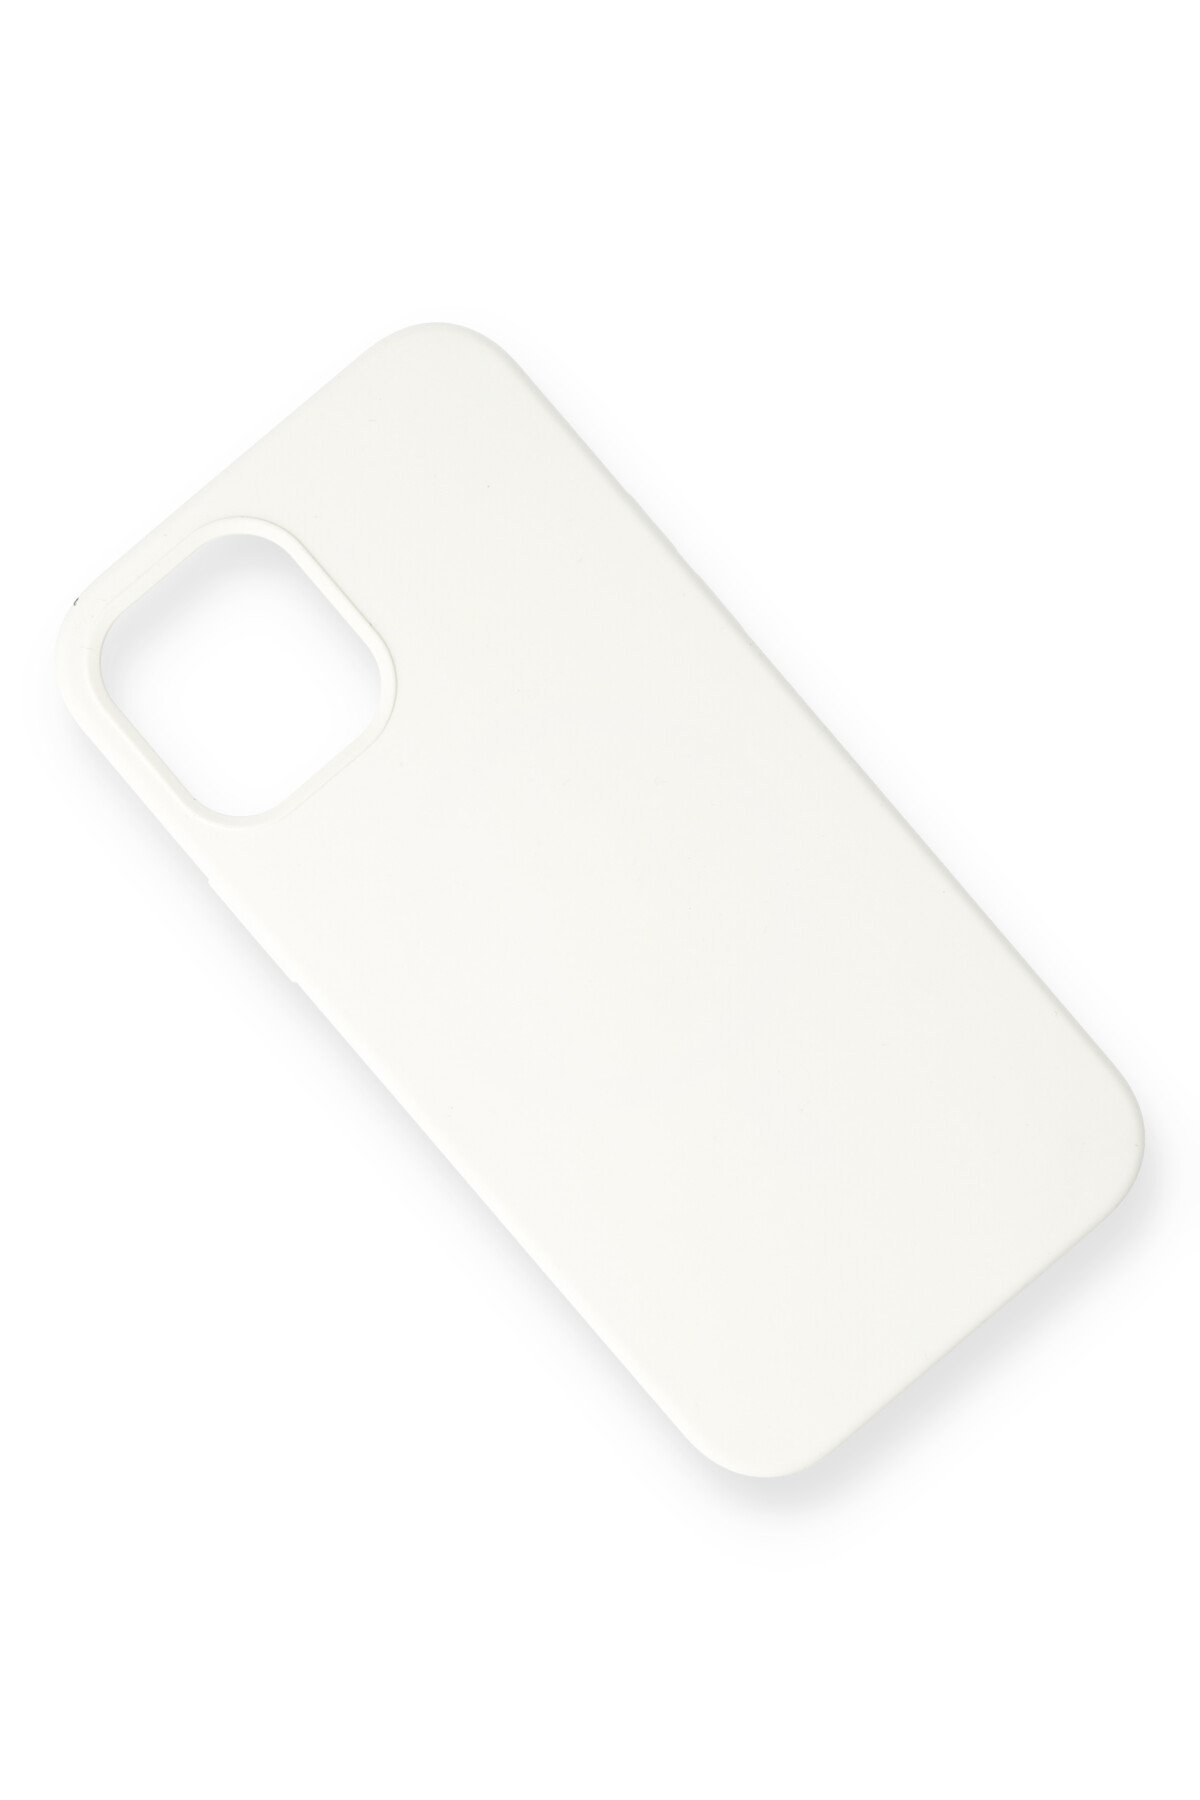 Newface iPhone 12 Mini Kılıf Focus Derili Silikon - Lacivert